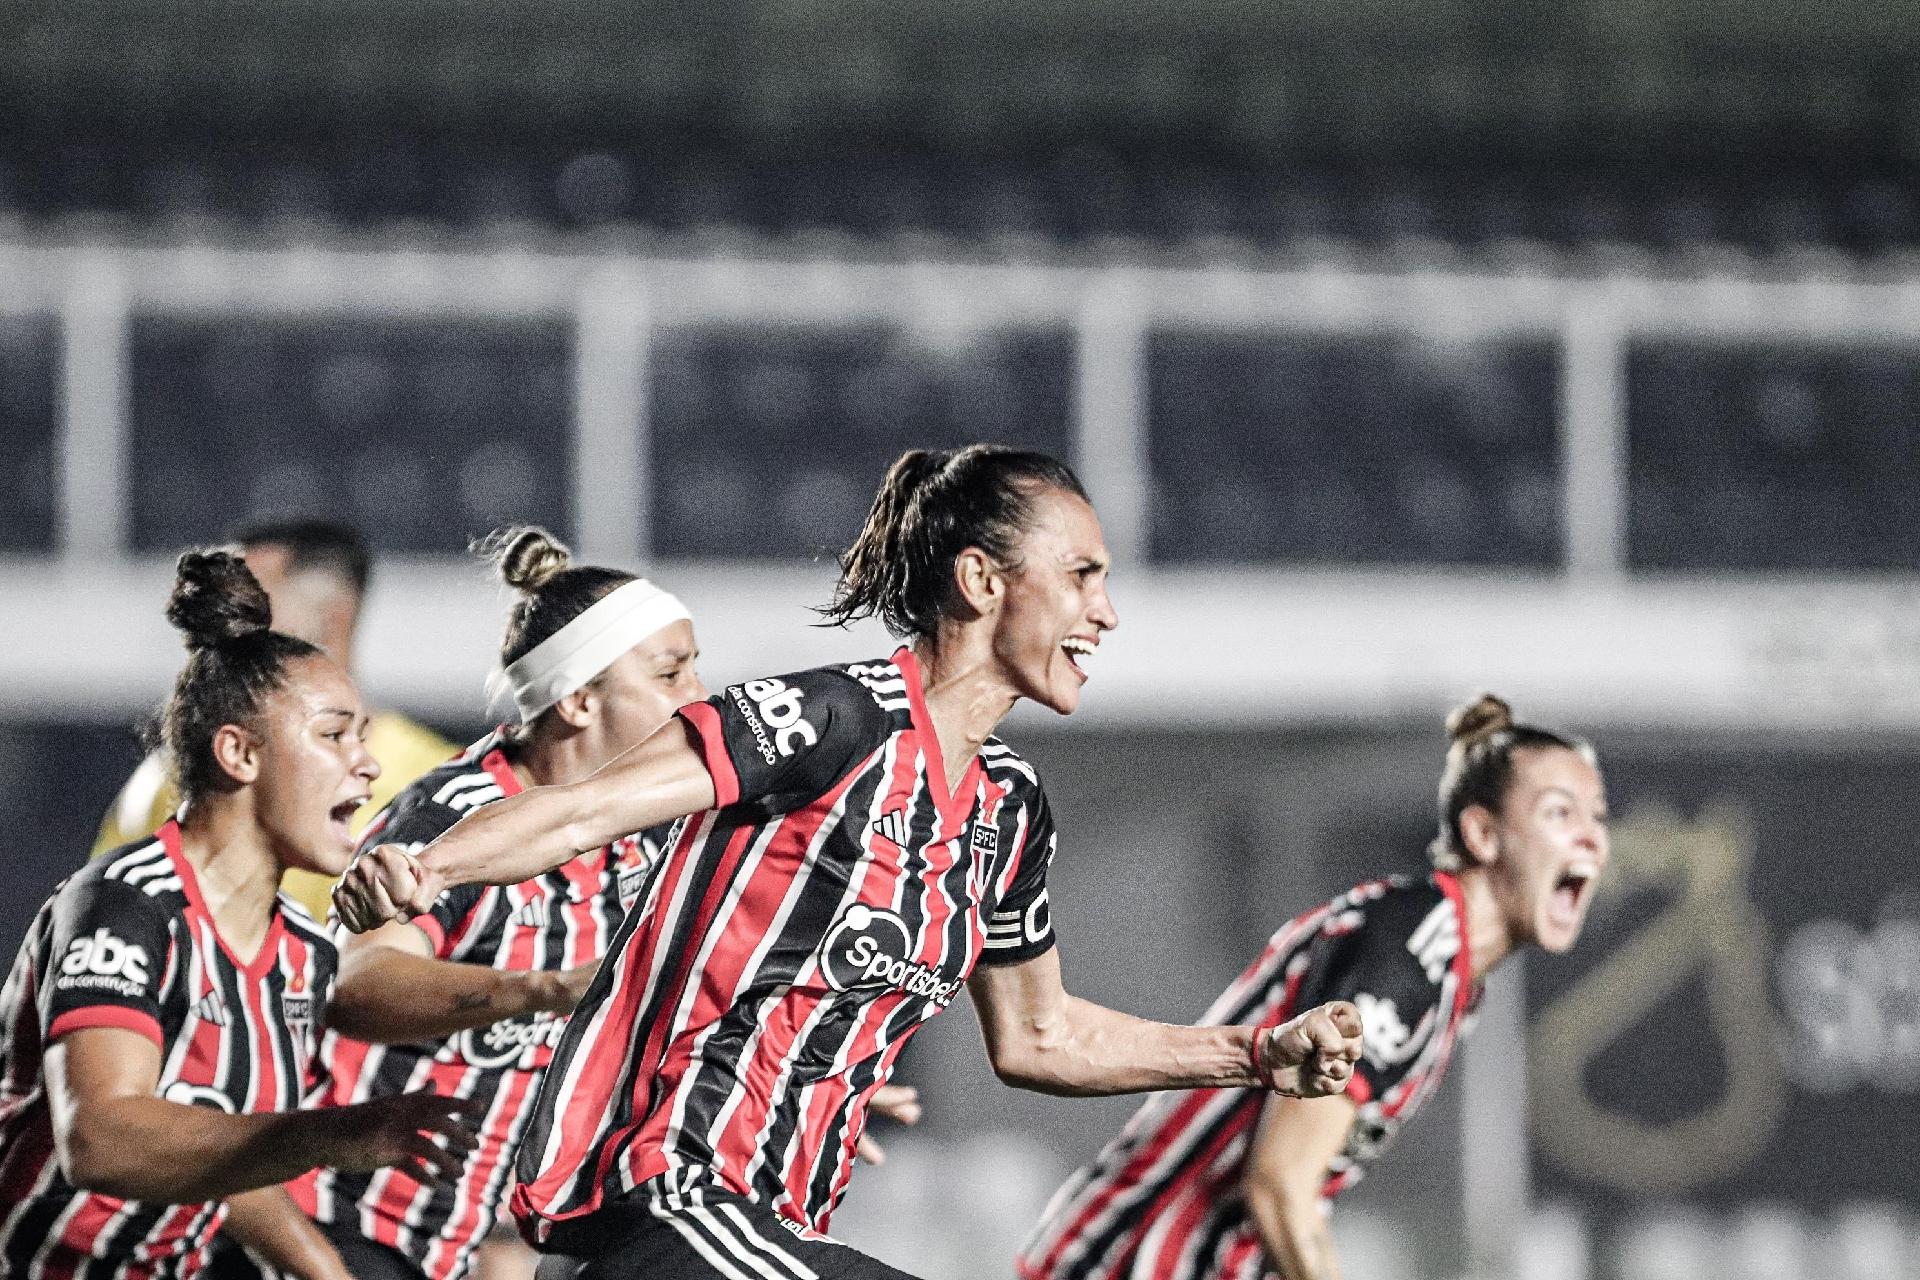 Barueri vence pela primeira vez no Paulista feminino